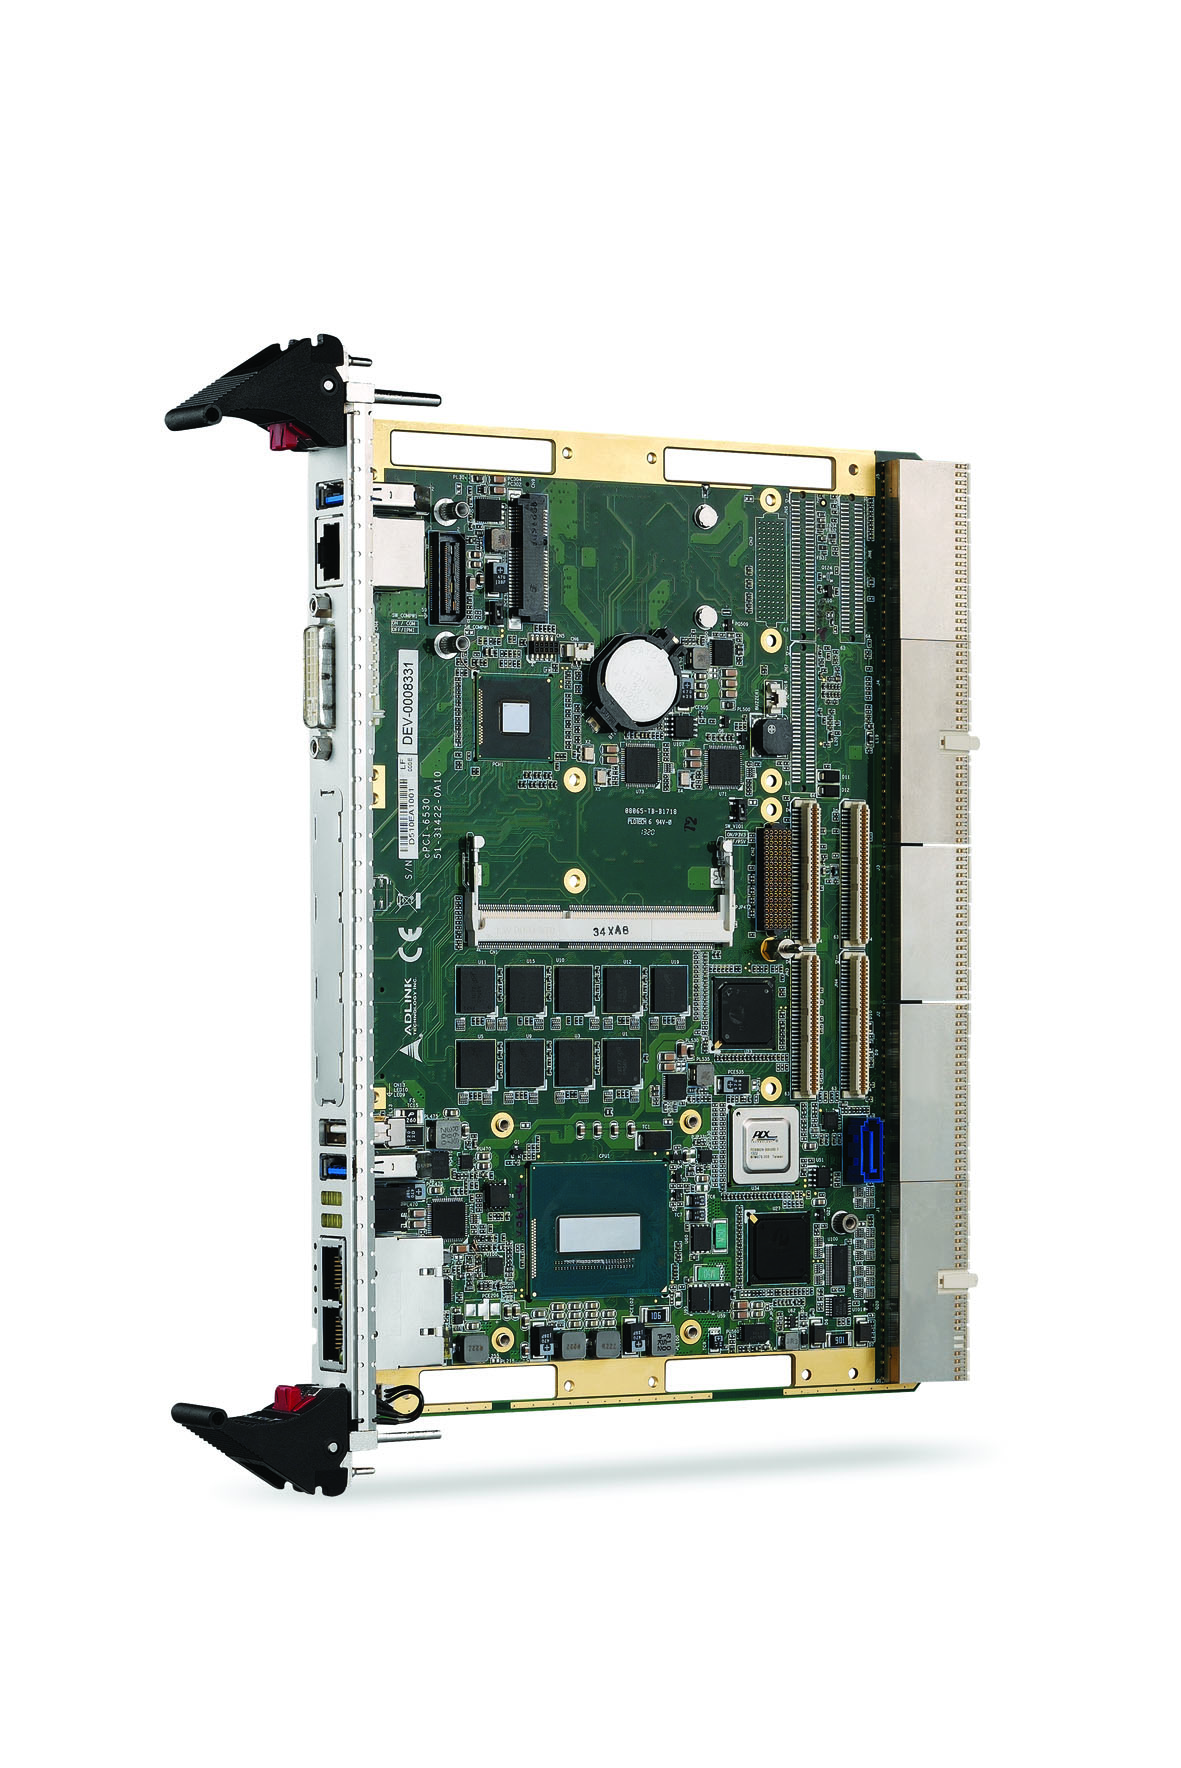 6U CompactPCI процессорный модуль с Intel Core i7 4-поколения и двумя PMC/XMC